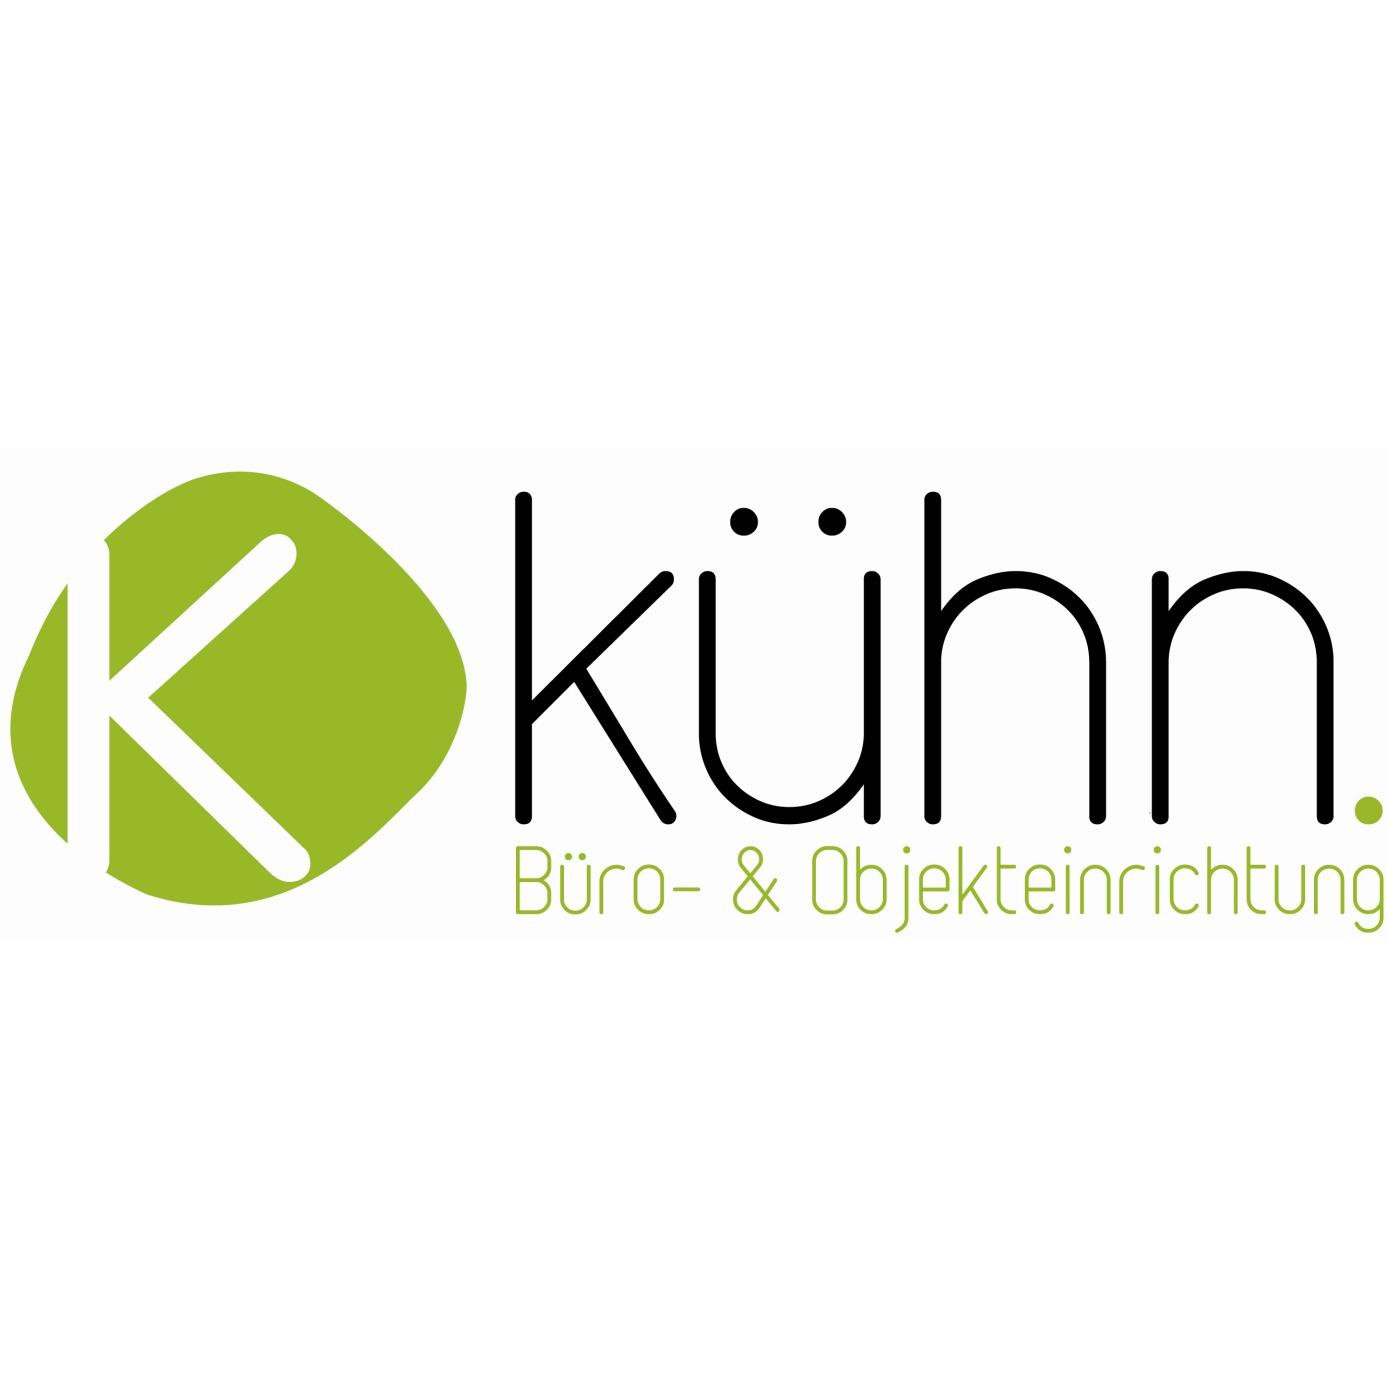 Kühn Büro- & Objekteinrichtung GmbH - Ihr Palmberg Händler aus Schwerin Schwerin 0385 59181310